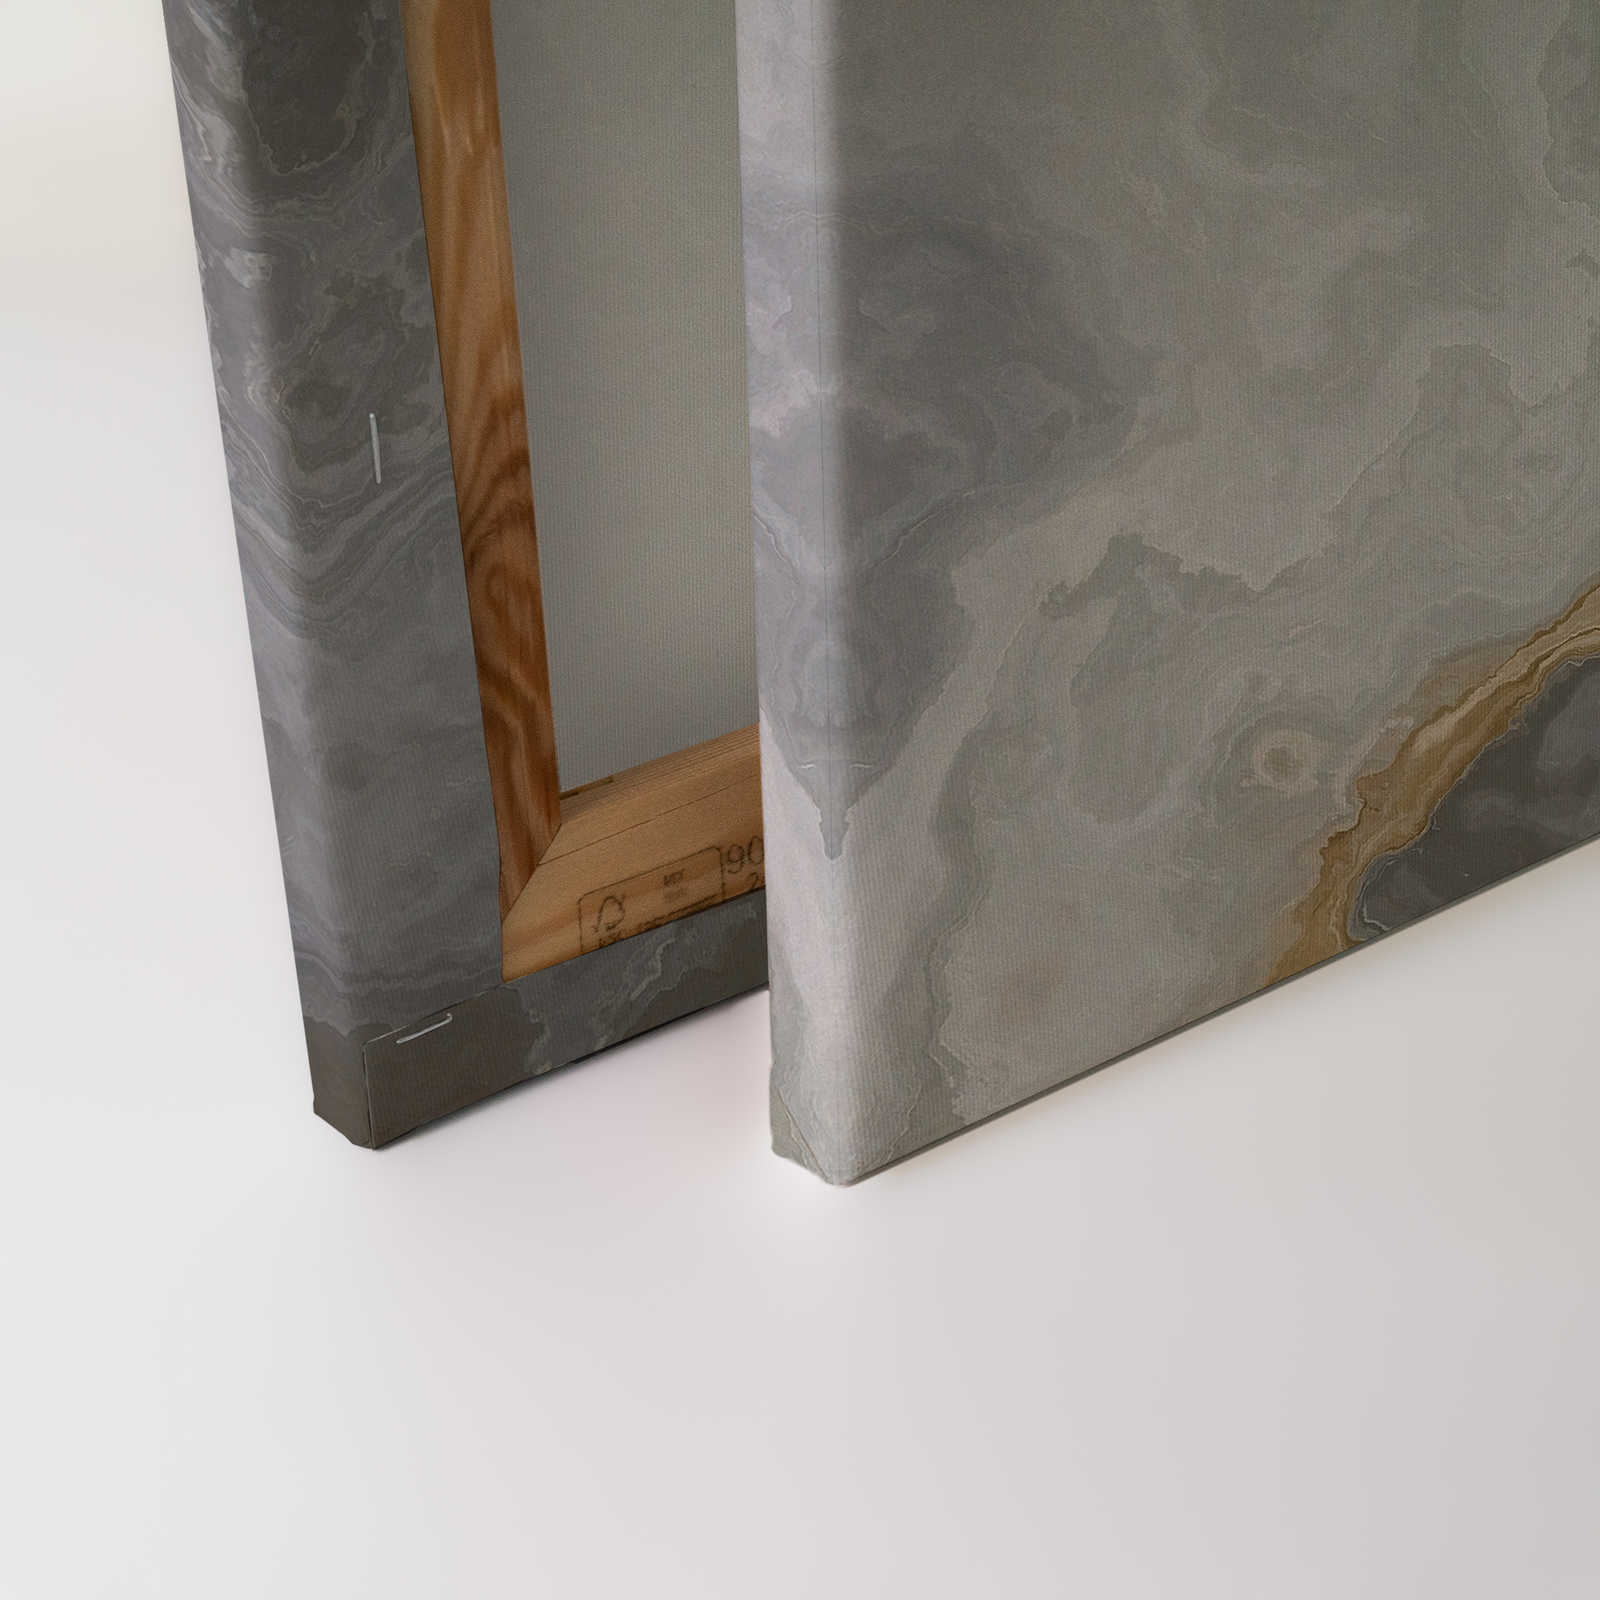             Quadro su tela in quarzo effetto pietra con marmorizzazione - 1,20 m x 0,80 m
        